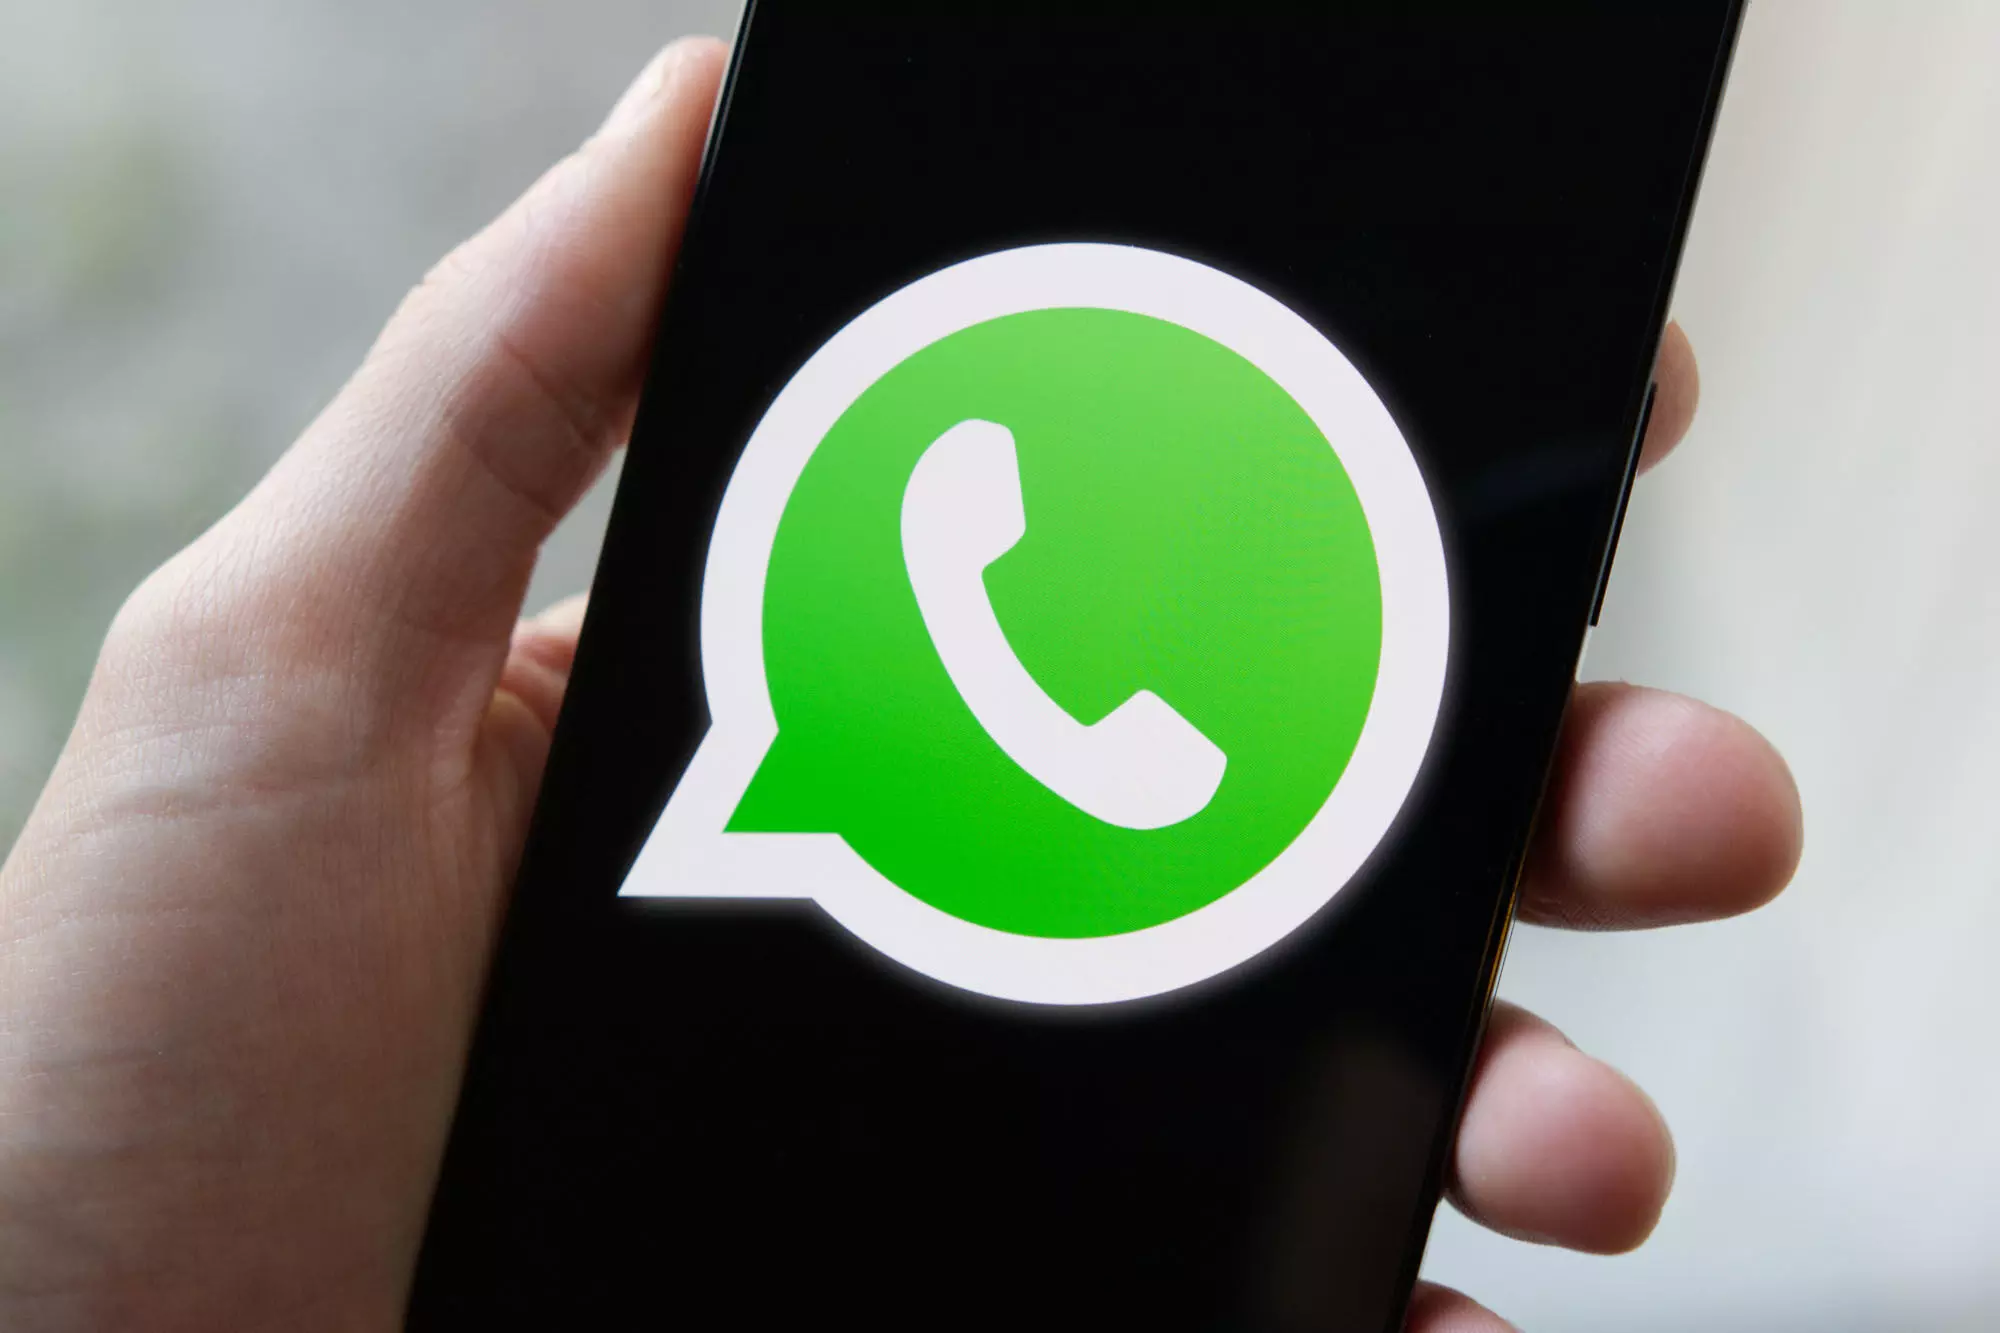 करोड़ों WhatsApp यूजर के लिए खबर, क्या बंद होंगे? IT मंत्री का बयान